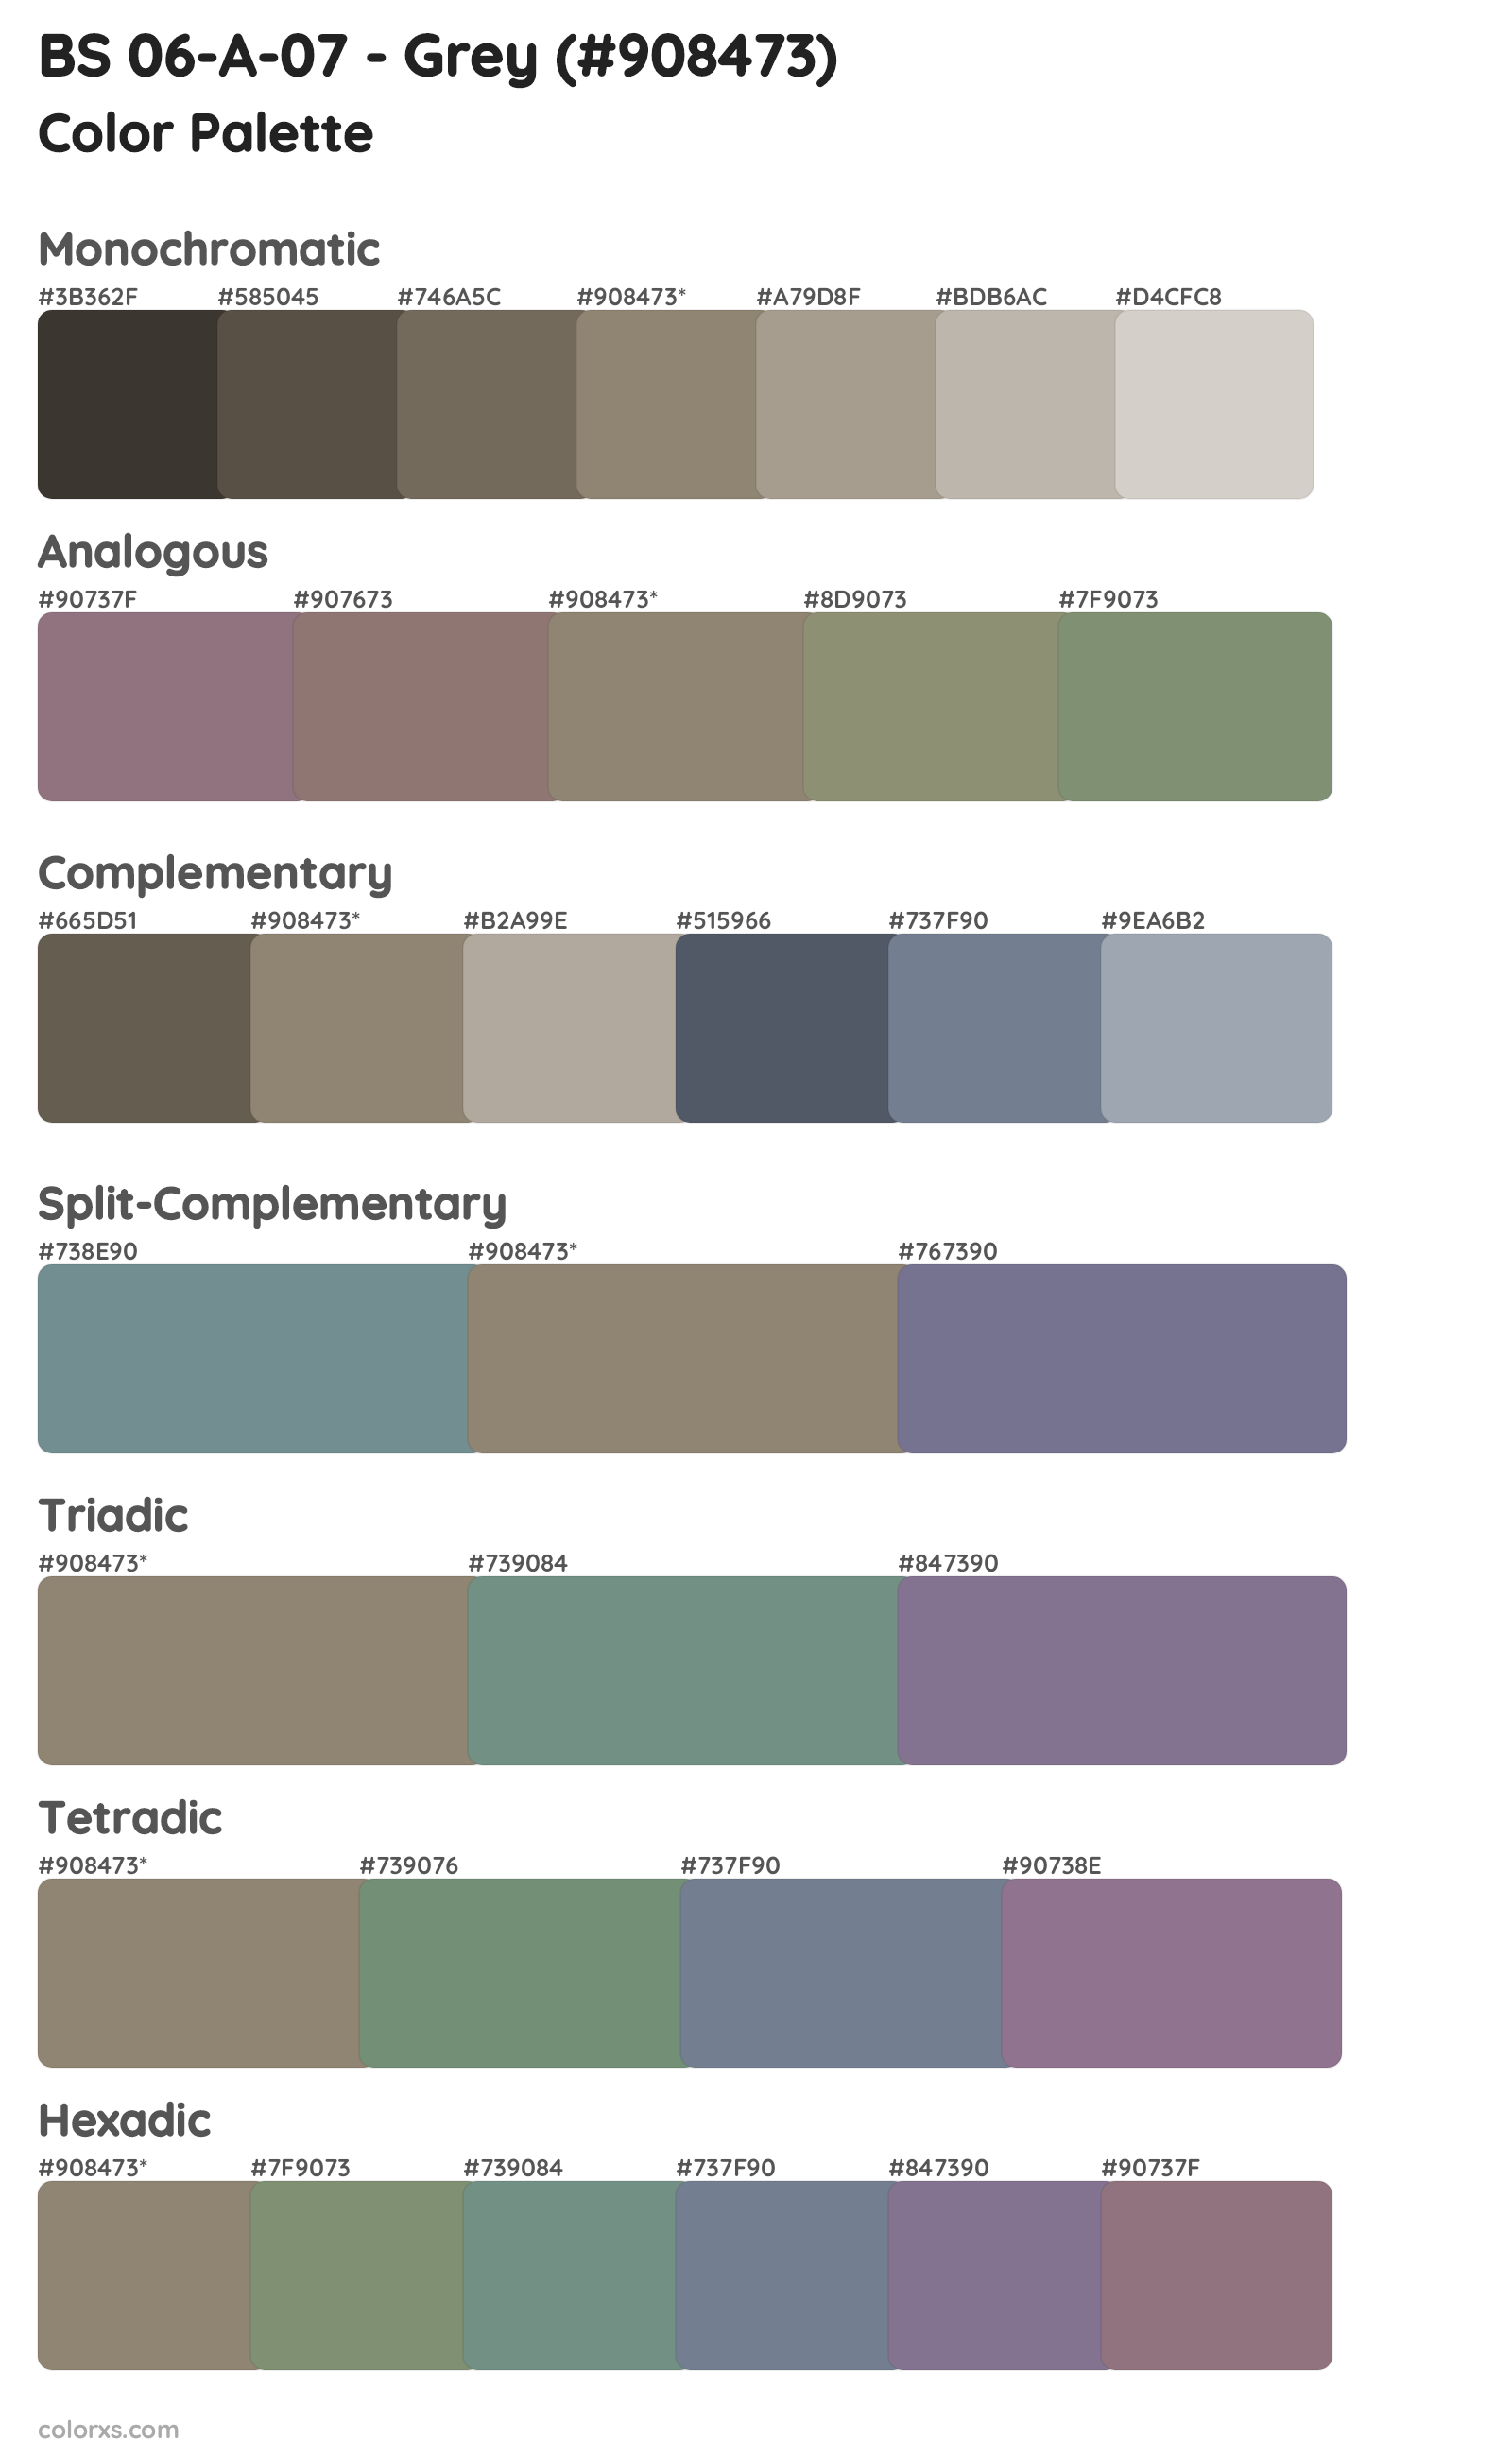 BS 06-A-07 - Grey Color Scheme Palettes